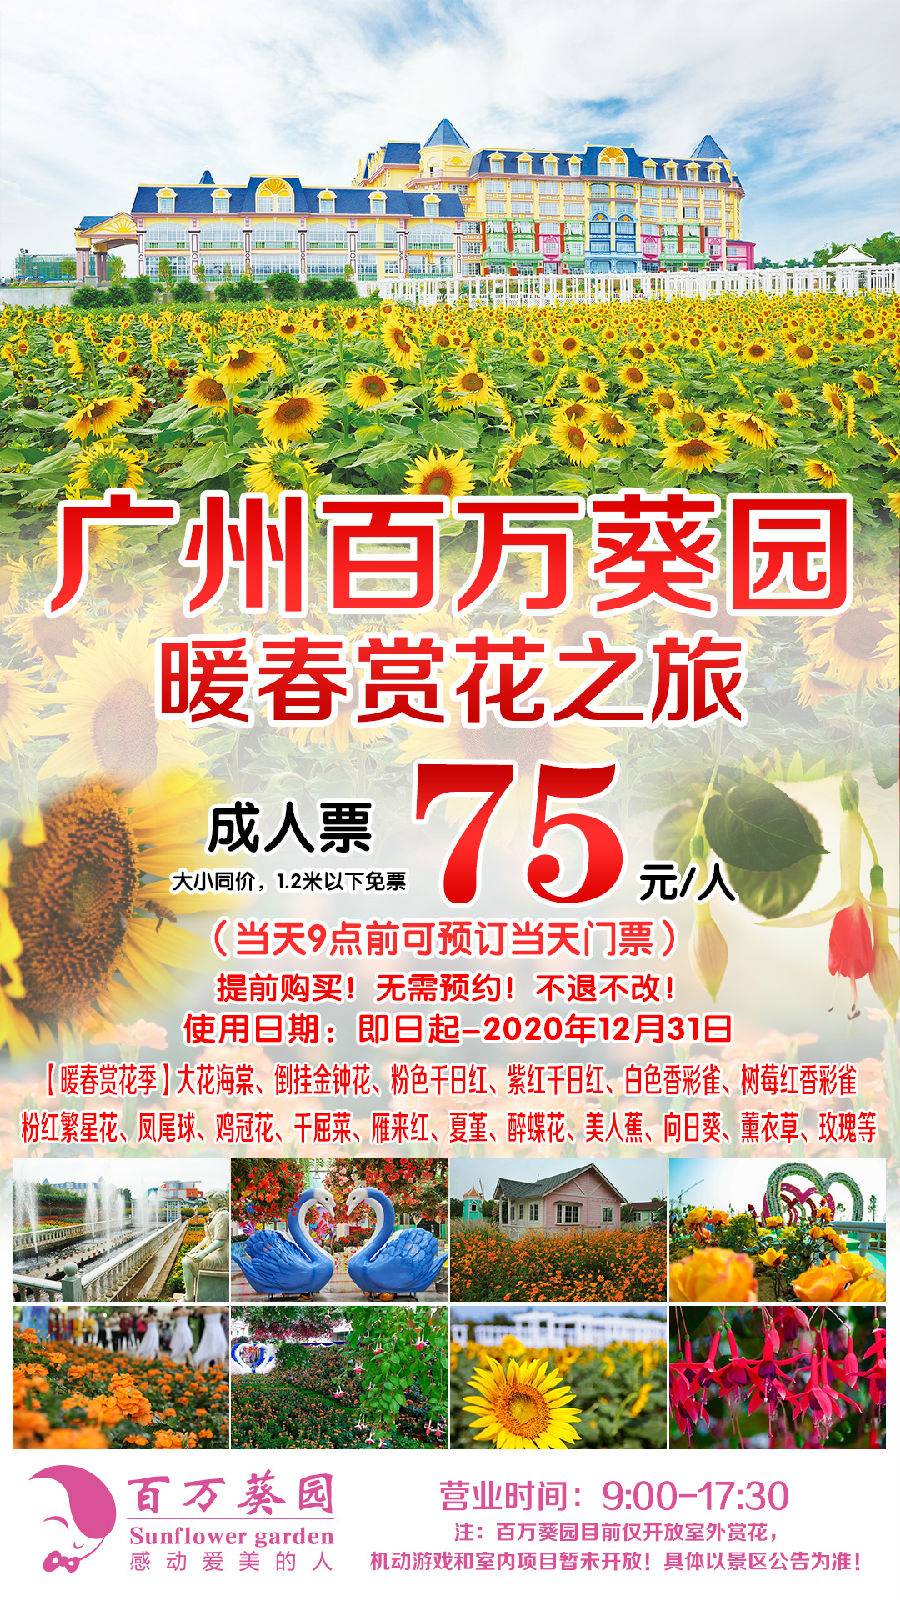 【抢购】广州百万葵园暖春赏花之旅成人票75元(2020年12月31日前）